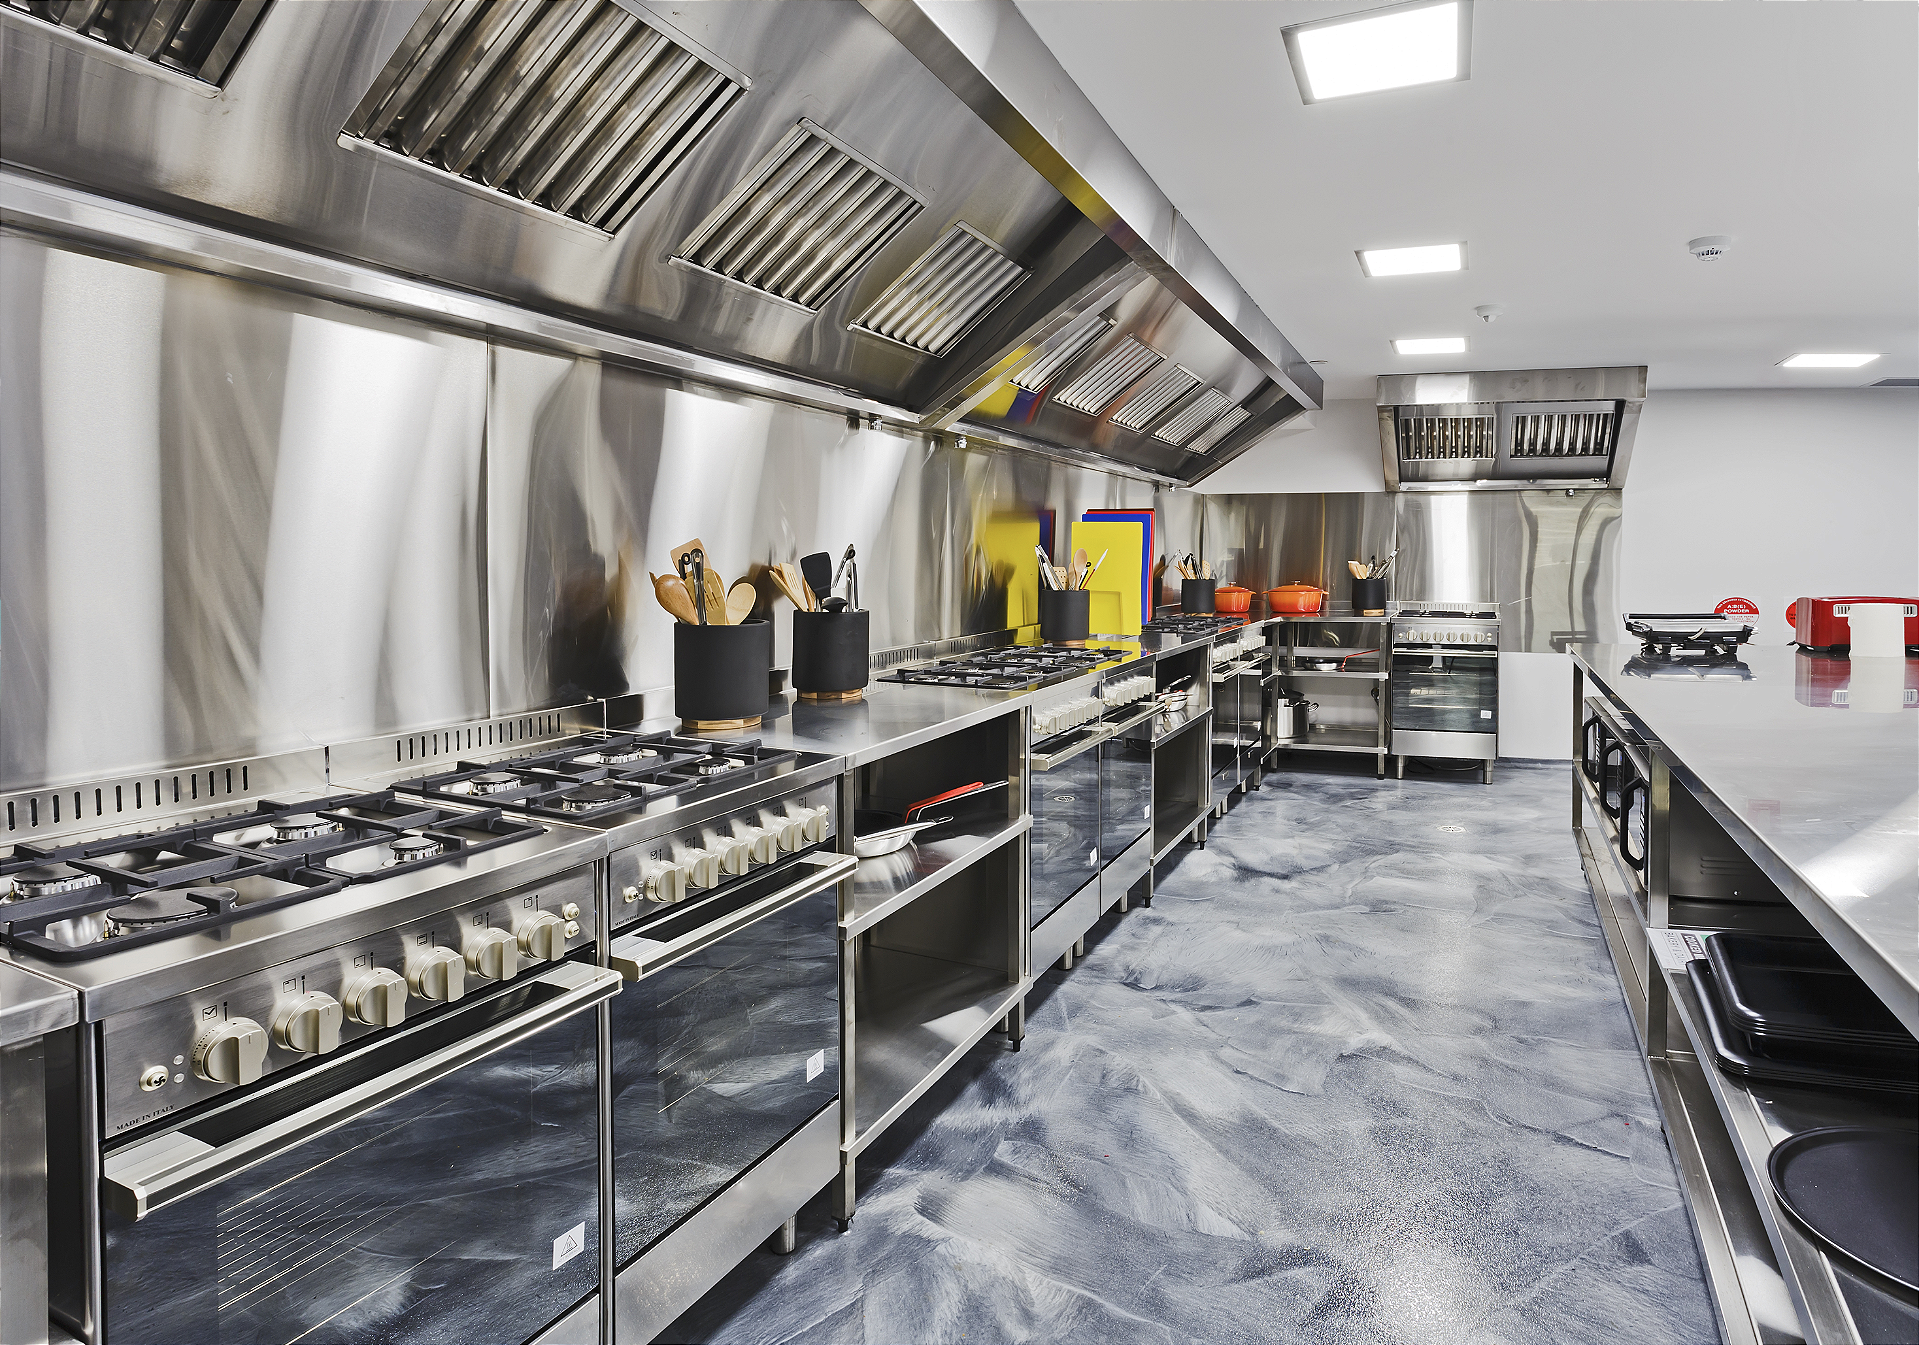 Equipamentos Industriais de Cozinha - Ilha das Cozinhas - Comércio de  equipamentos para Bares e Restaurantes